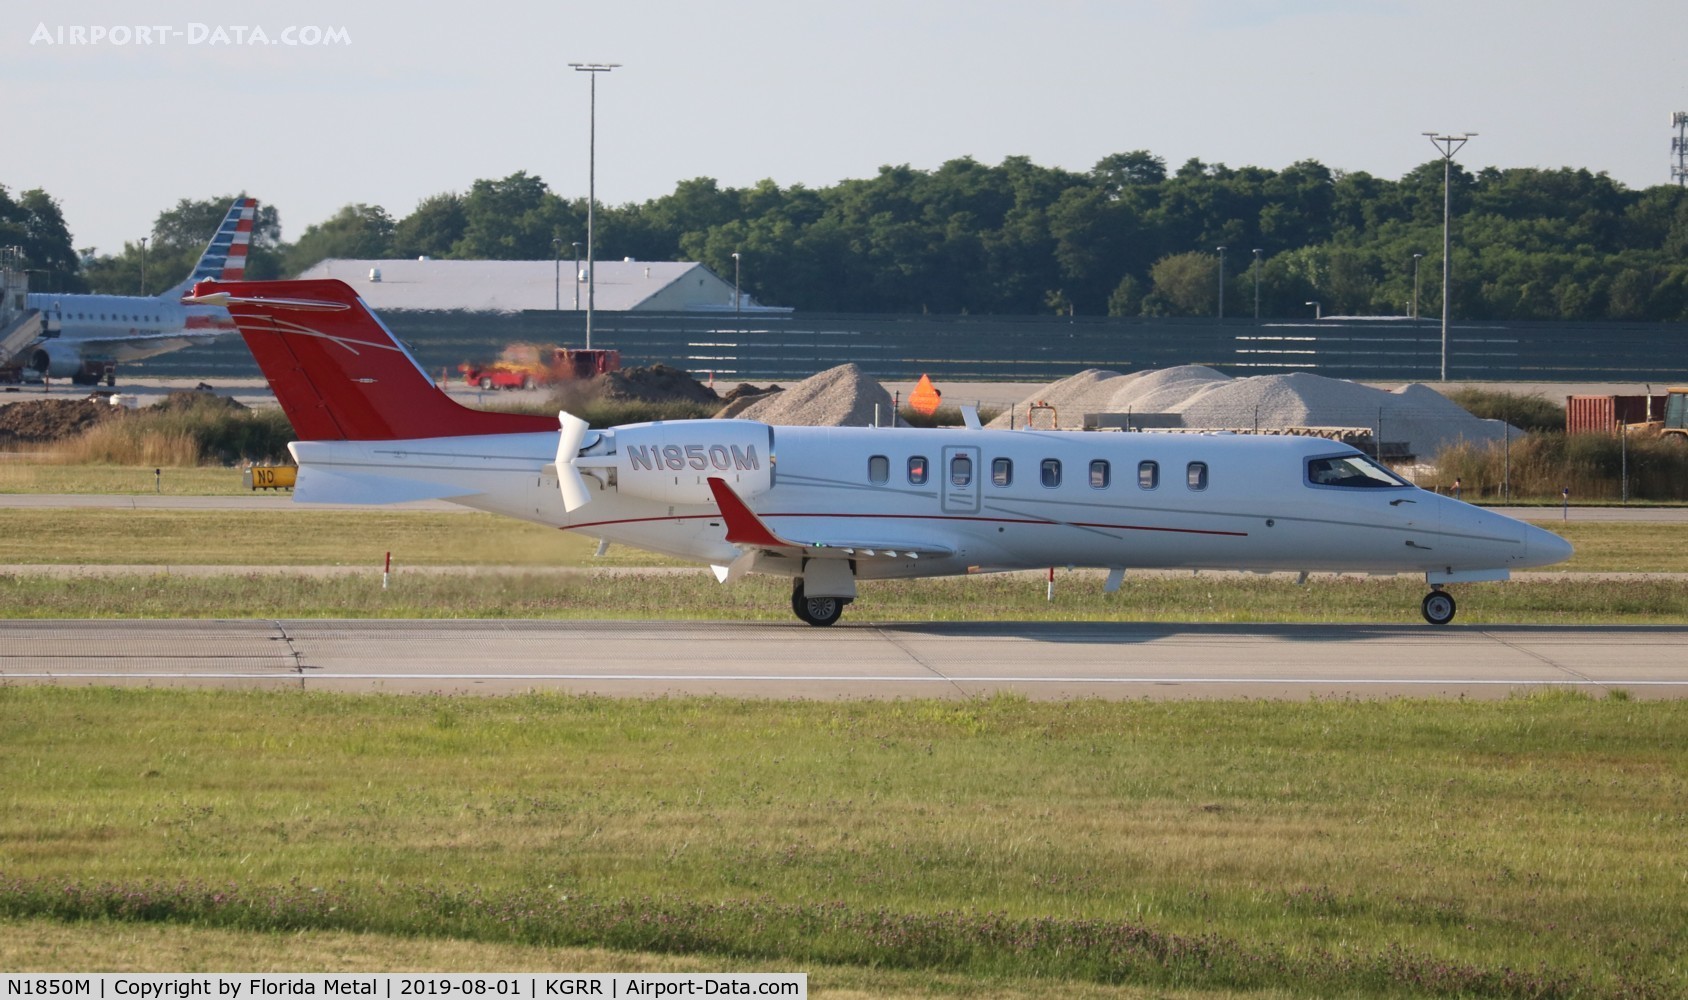 N1850M, 2014 Learjet 75 C/N 45-475, Lear 75